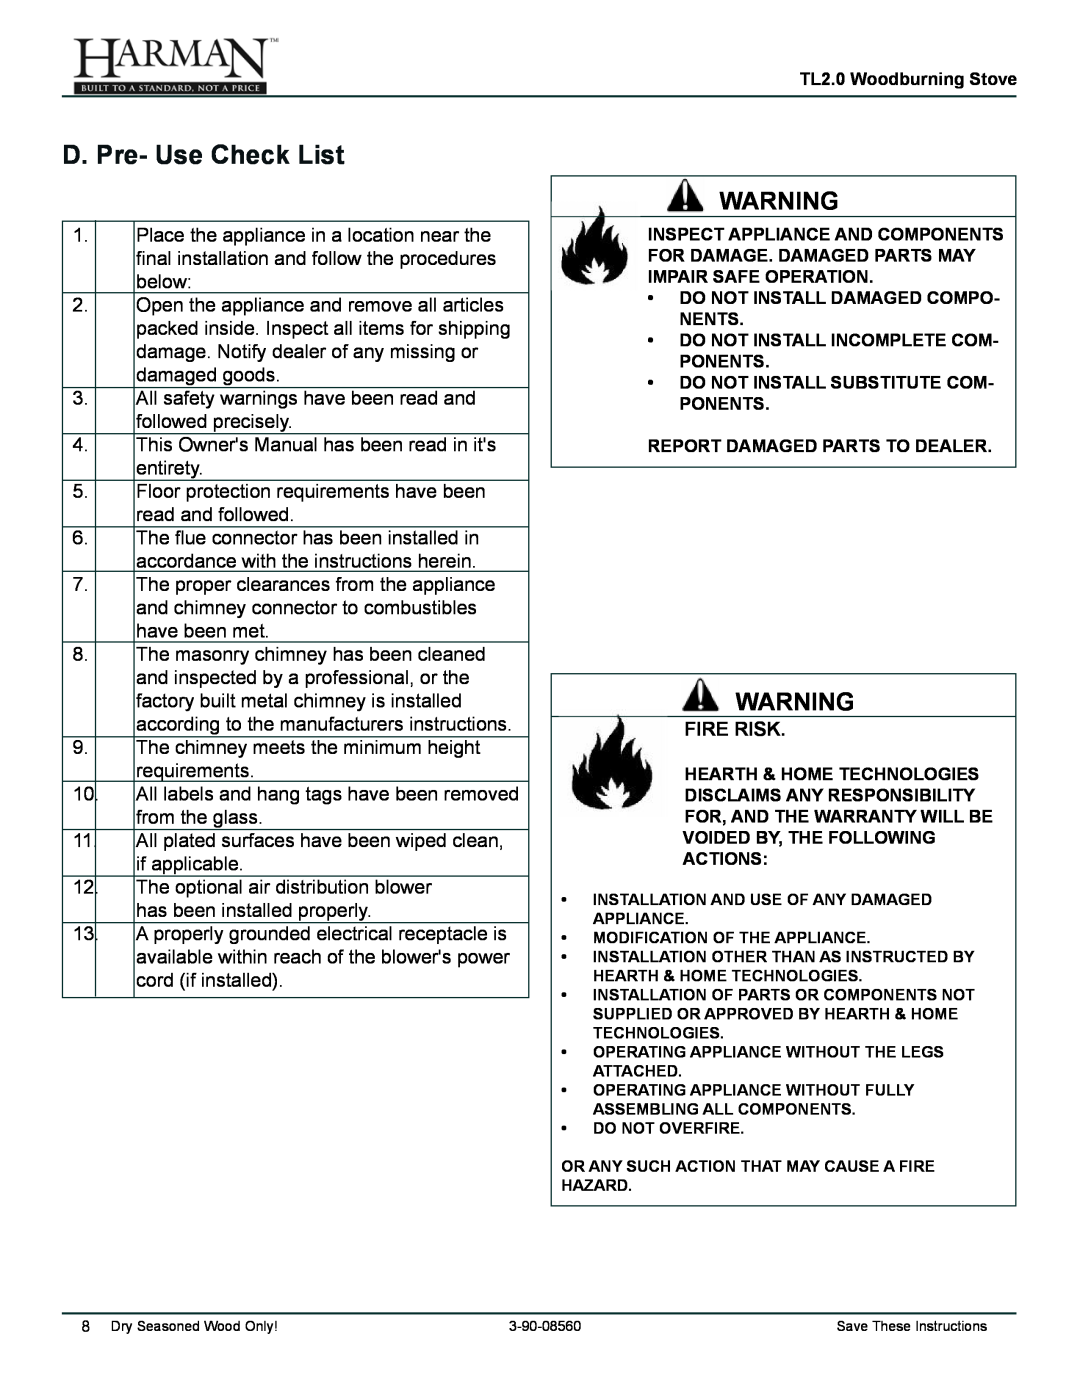 Harman Stove Company TL2.0 manual D. Pre- Use Check List, Fire Risk 